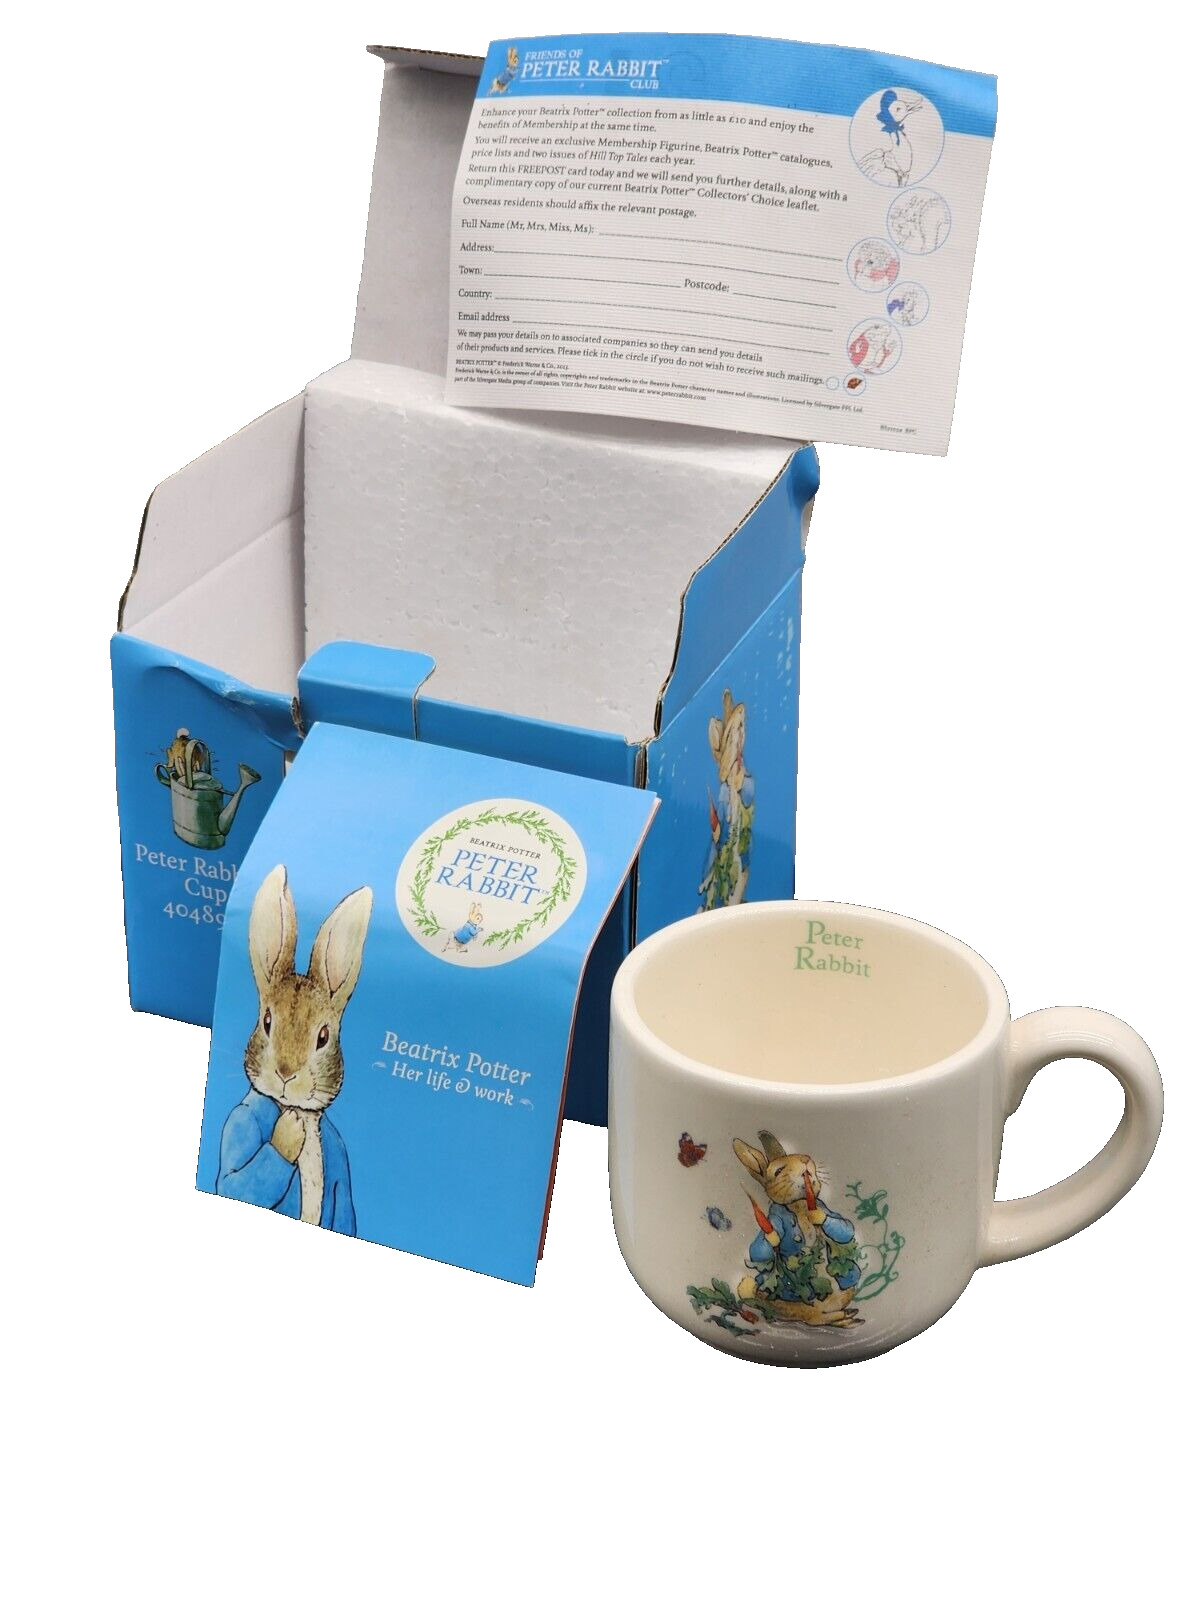 Peter Rabbit Cup 4048913 Beatrix Potter 2015 Enesco Mug New W papers